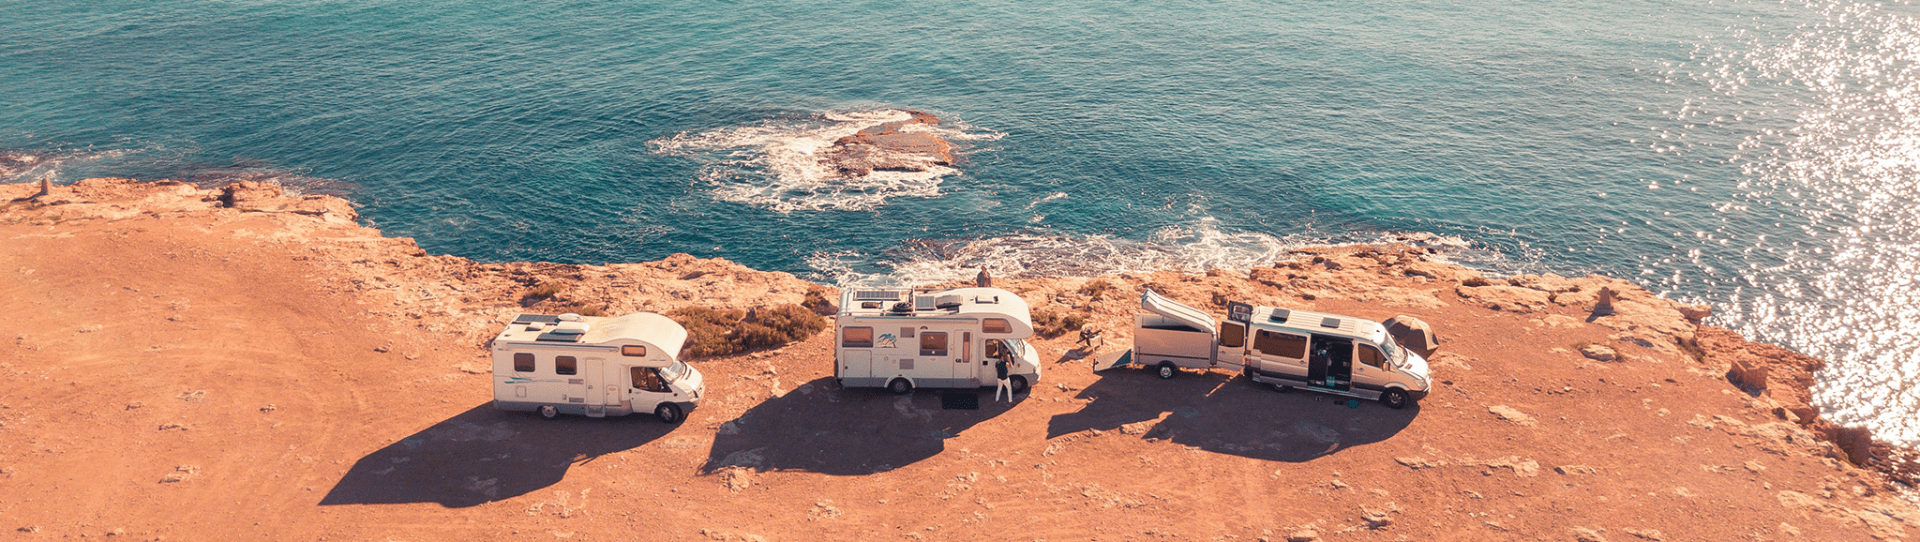 Photo : trois camping-cars sur les rochers à la mer